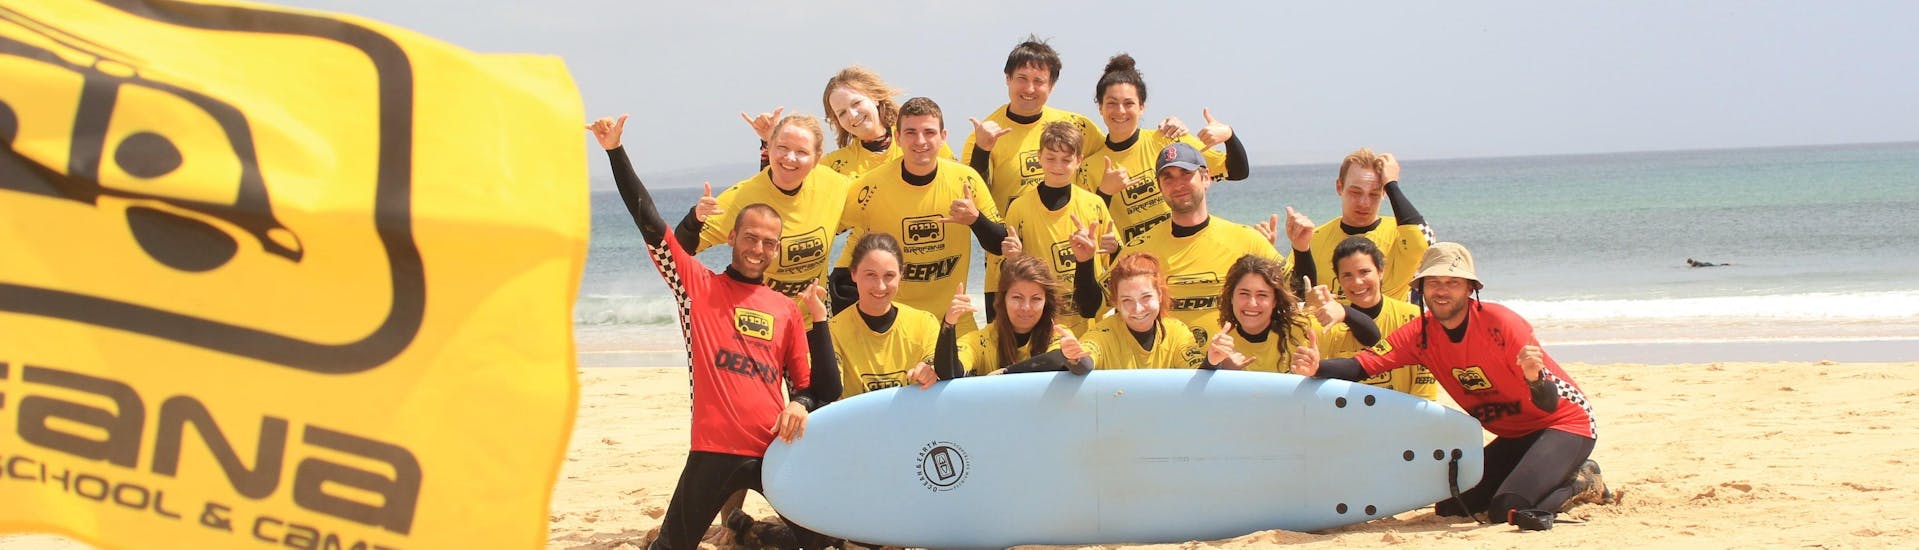 Een groep gelukkige surfers poseert voor een foto na afloop van hun surfles op Praia da Arrifana, georganiseerd door Arrifana Surf School.